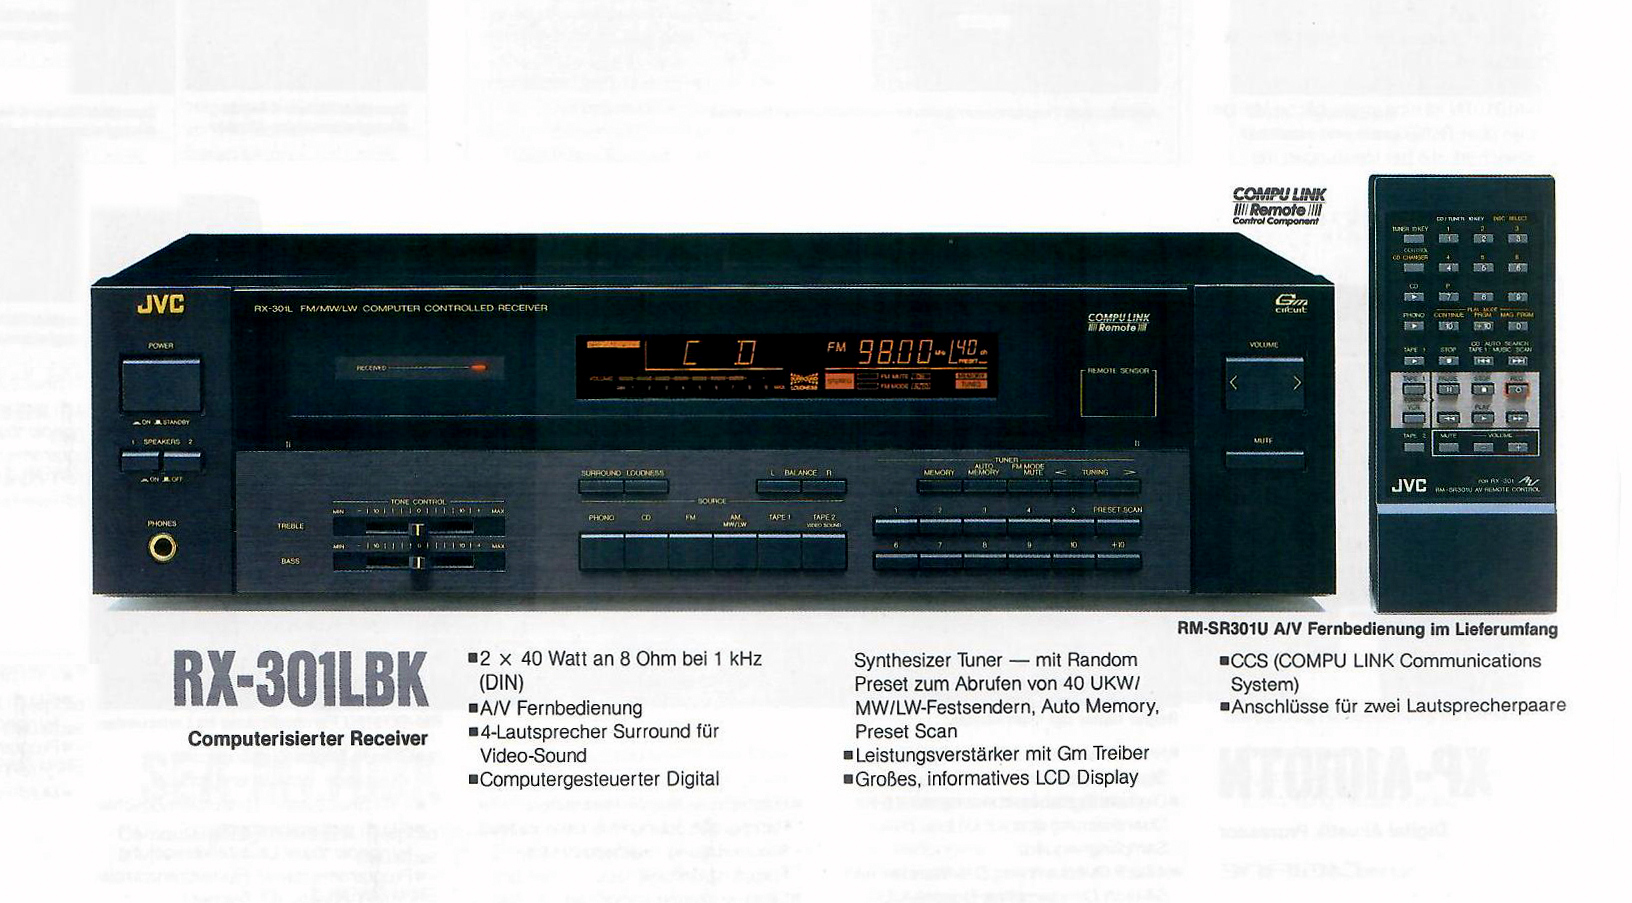 JVC RX-301 LBK-Prospekt-1989.jpg